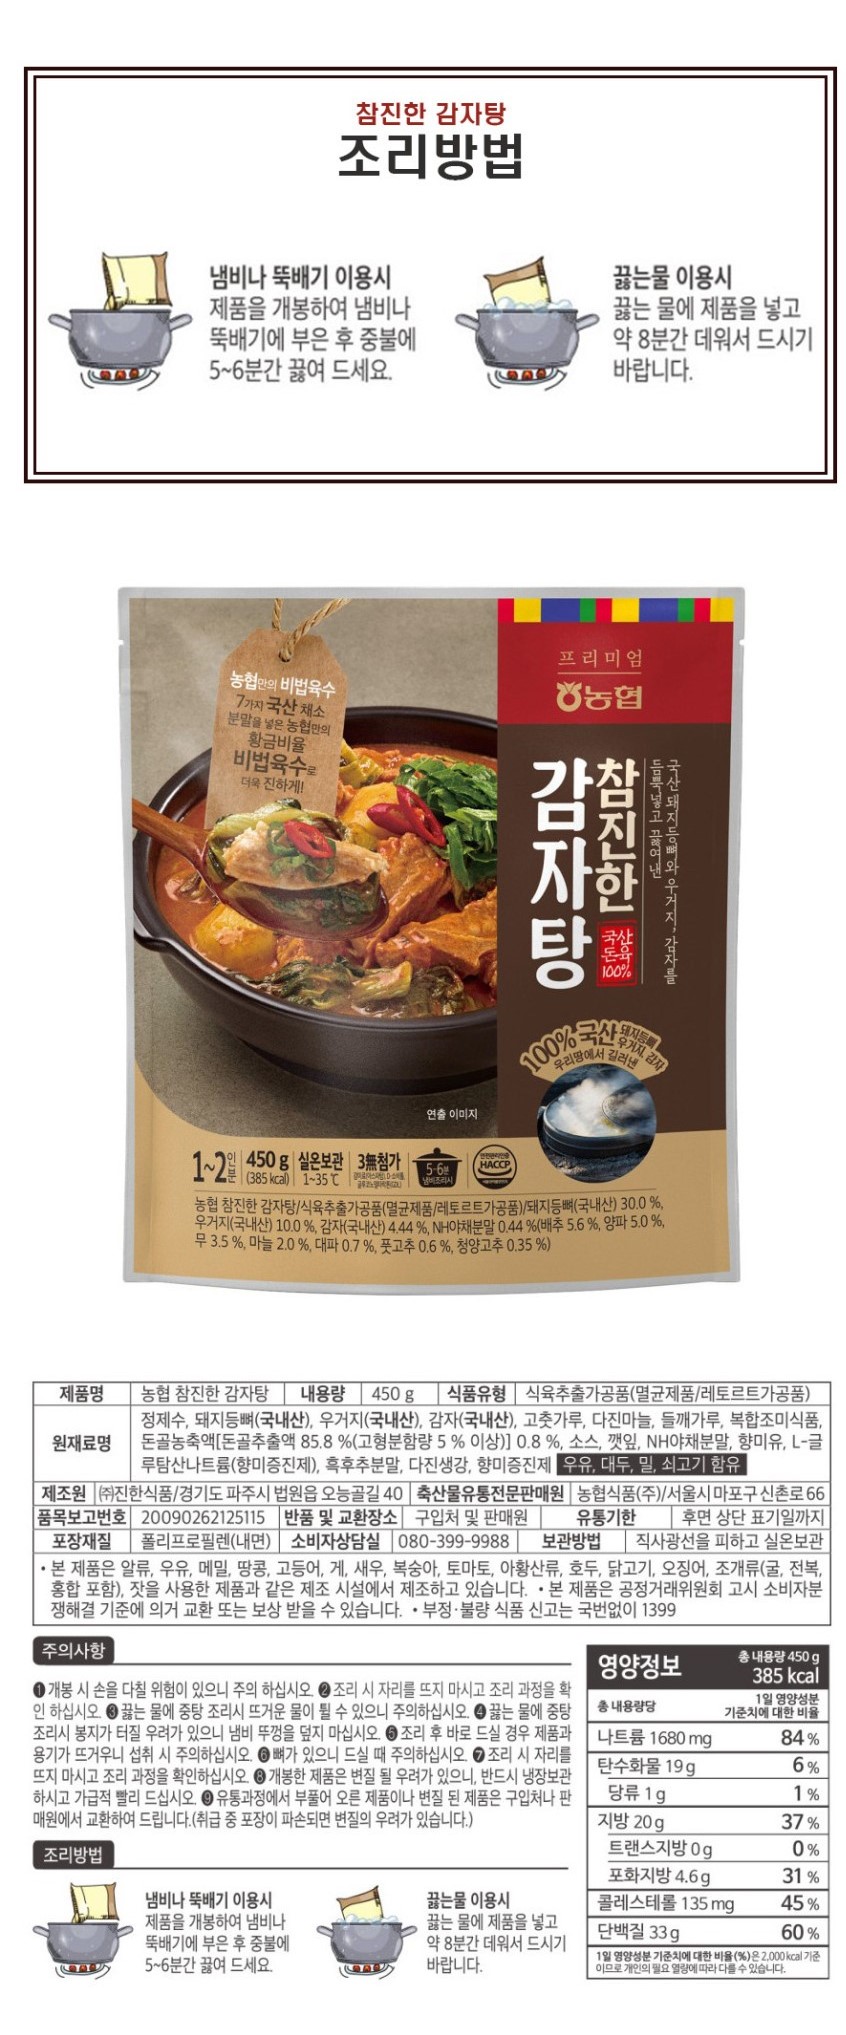 韓國食品-[NH] 馬鈴薯排骨湯 450g